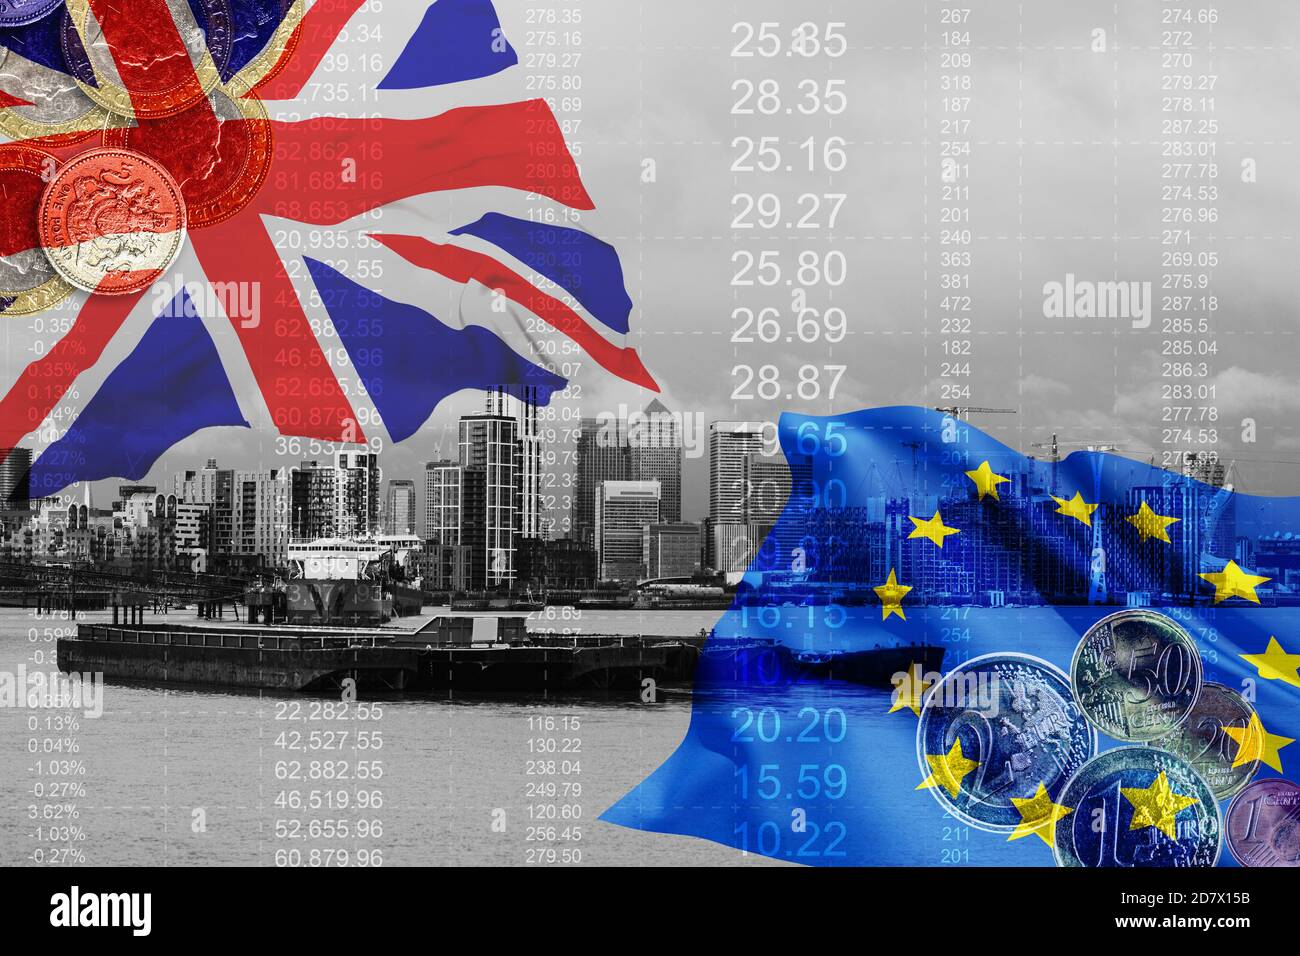 Großbritannien Flagge, vereinigtes Königreich Wirtschaft und europäische Union Flagge, Finanz. Stockfoto